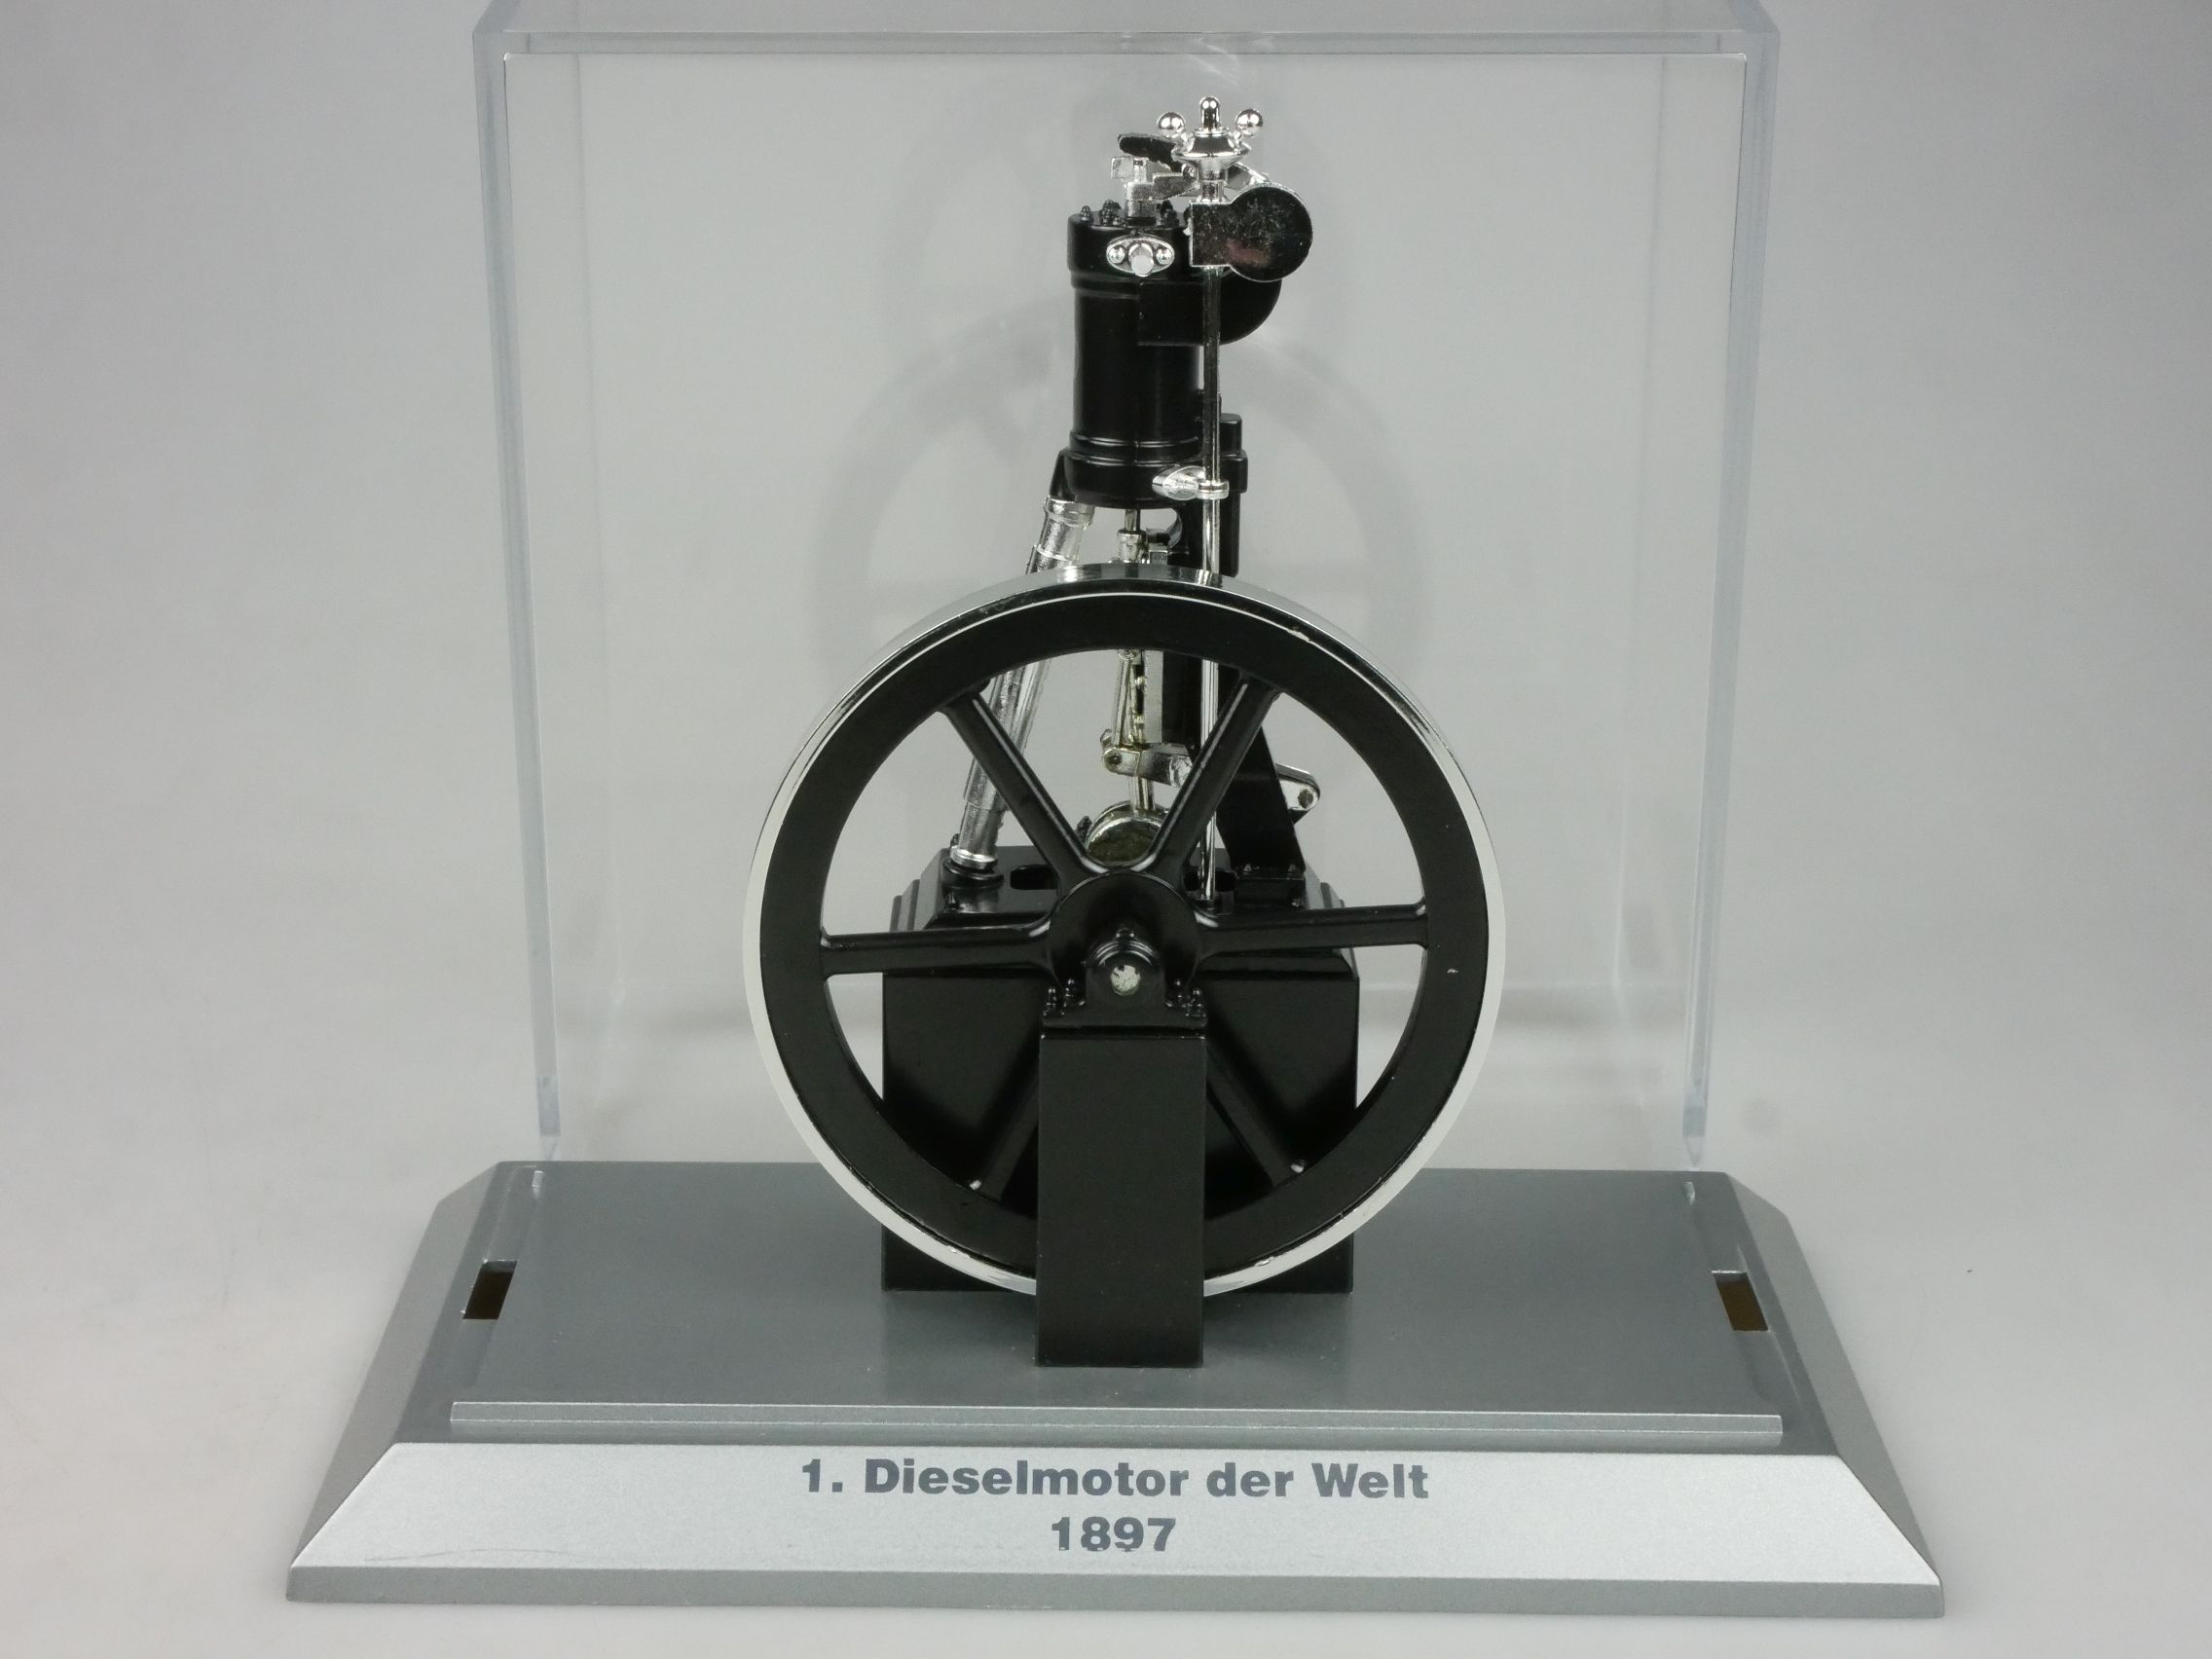 Conrad Modell 1/32 Scale 1. Dieselmotor der Welt 1897 # 9113 in Vitrine 126790